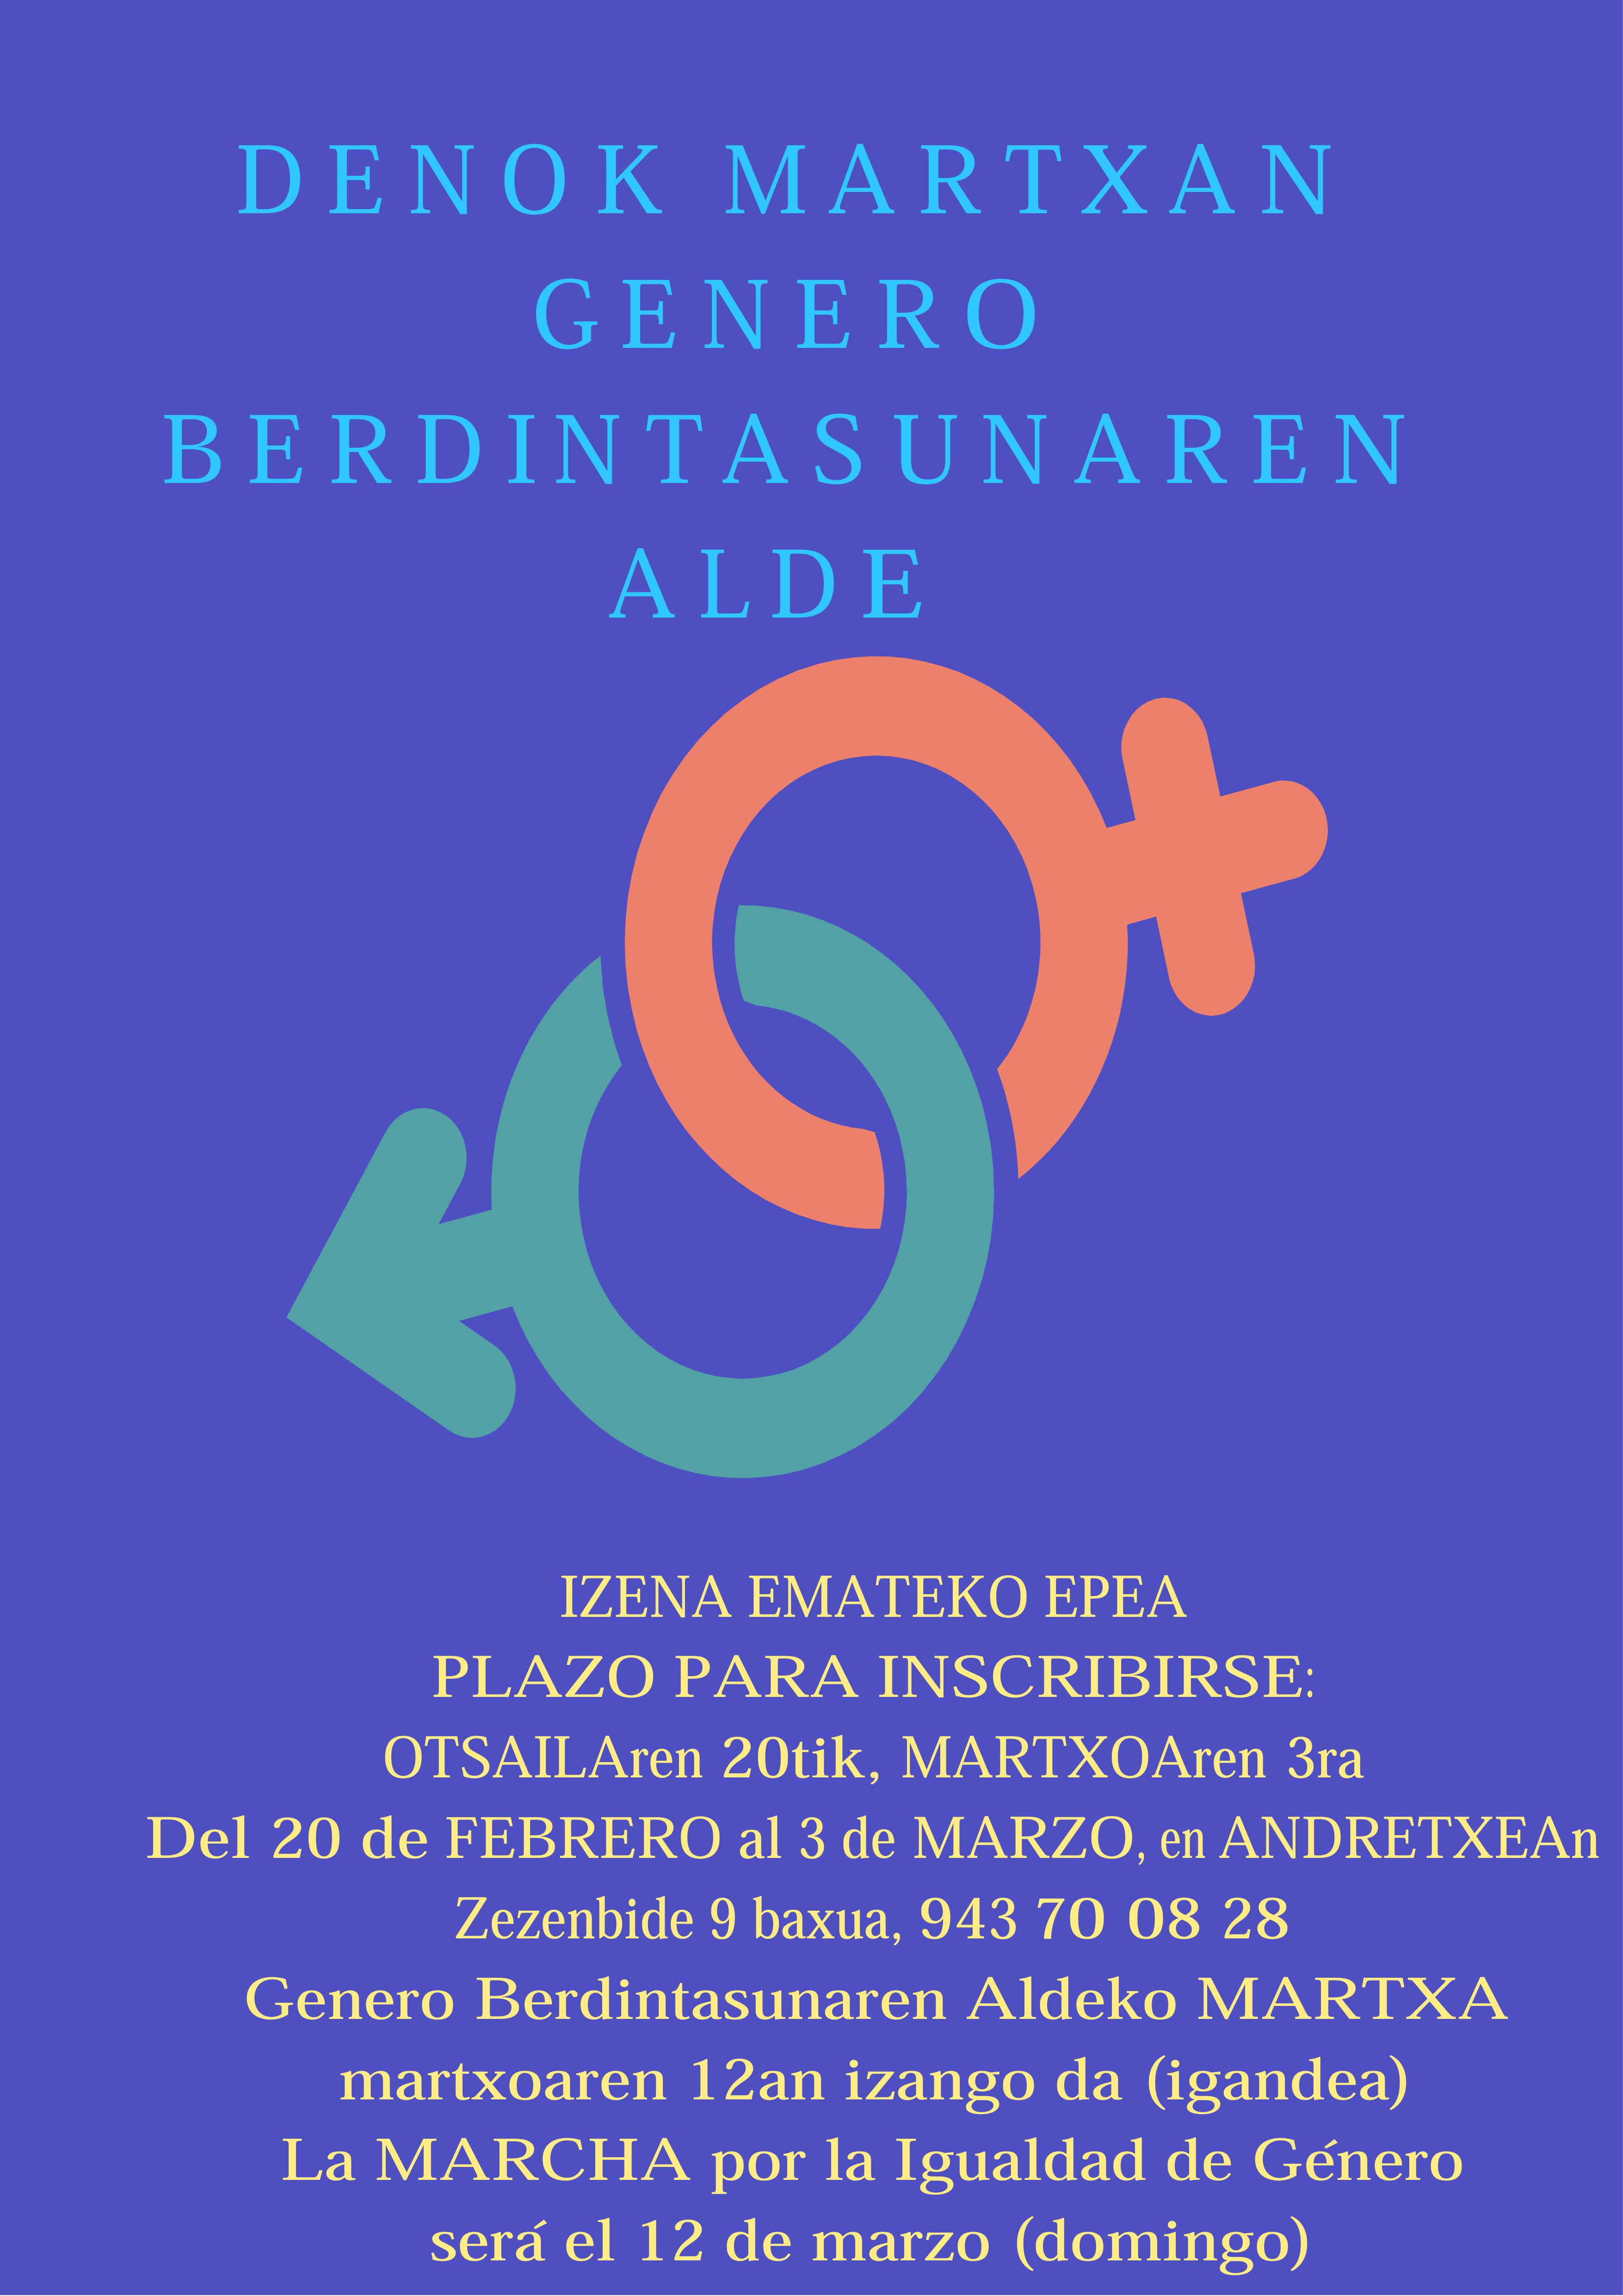 La Primera Marcha por la Igualdad de Género en Eibar se realizará el 12 de marzo